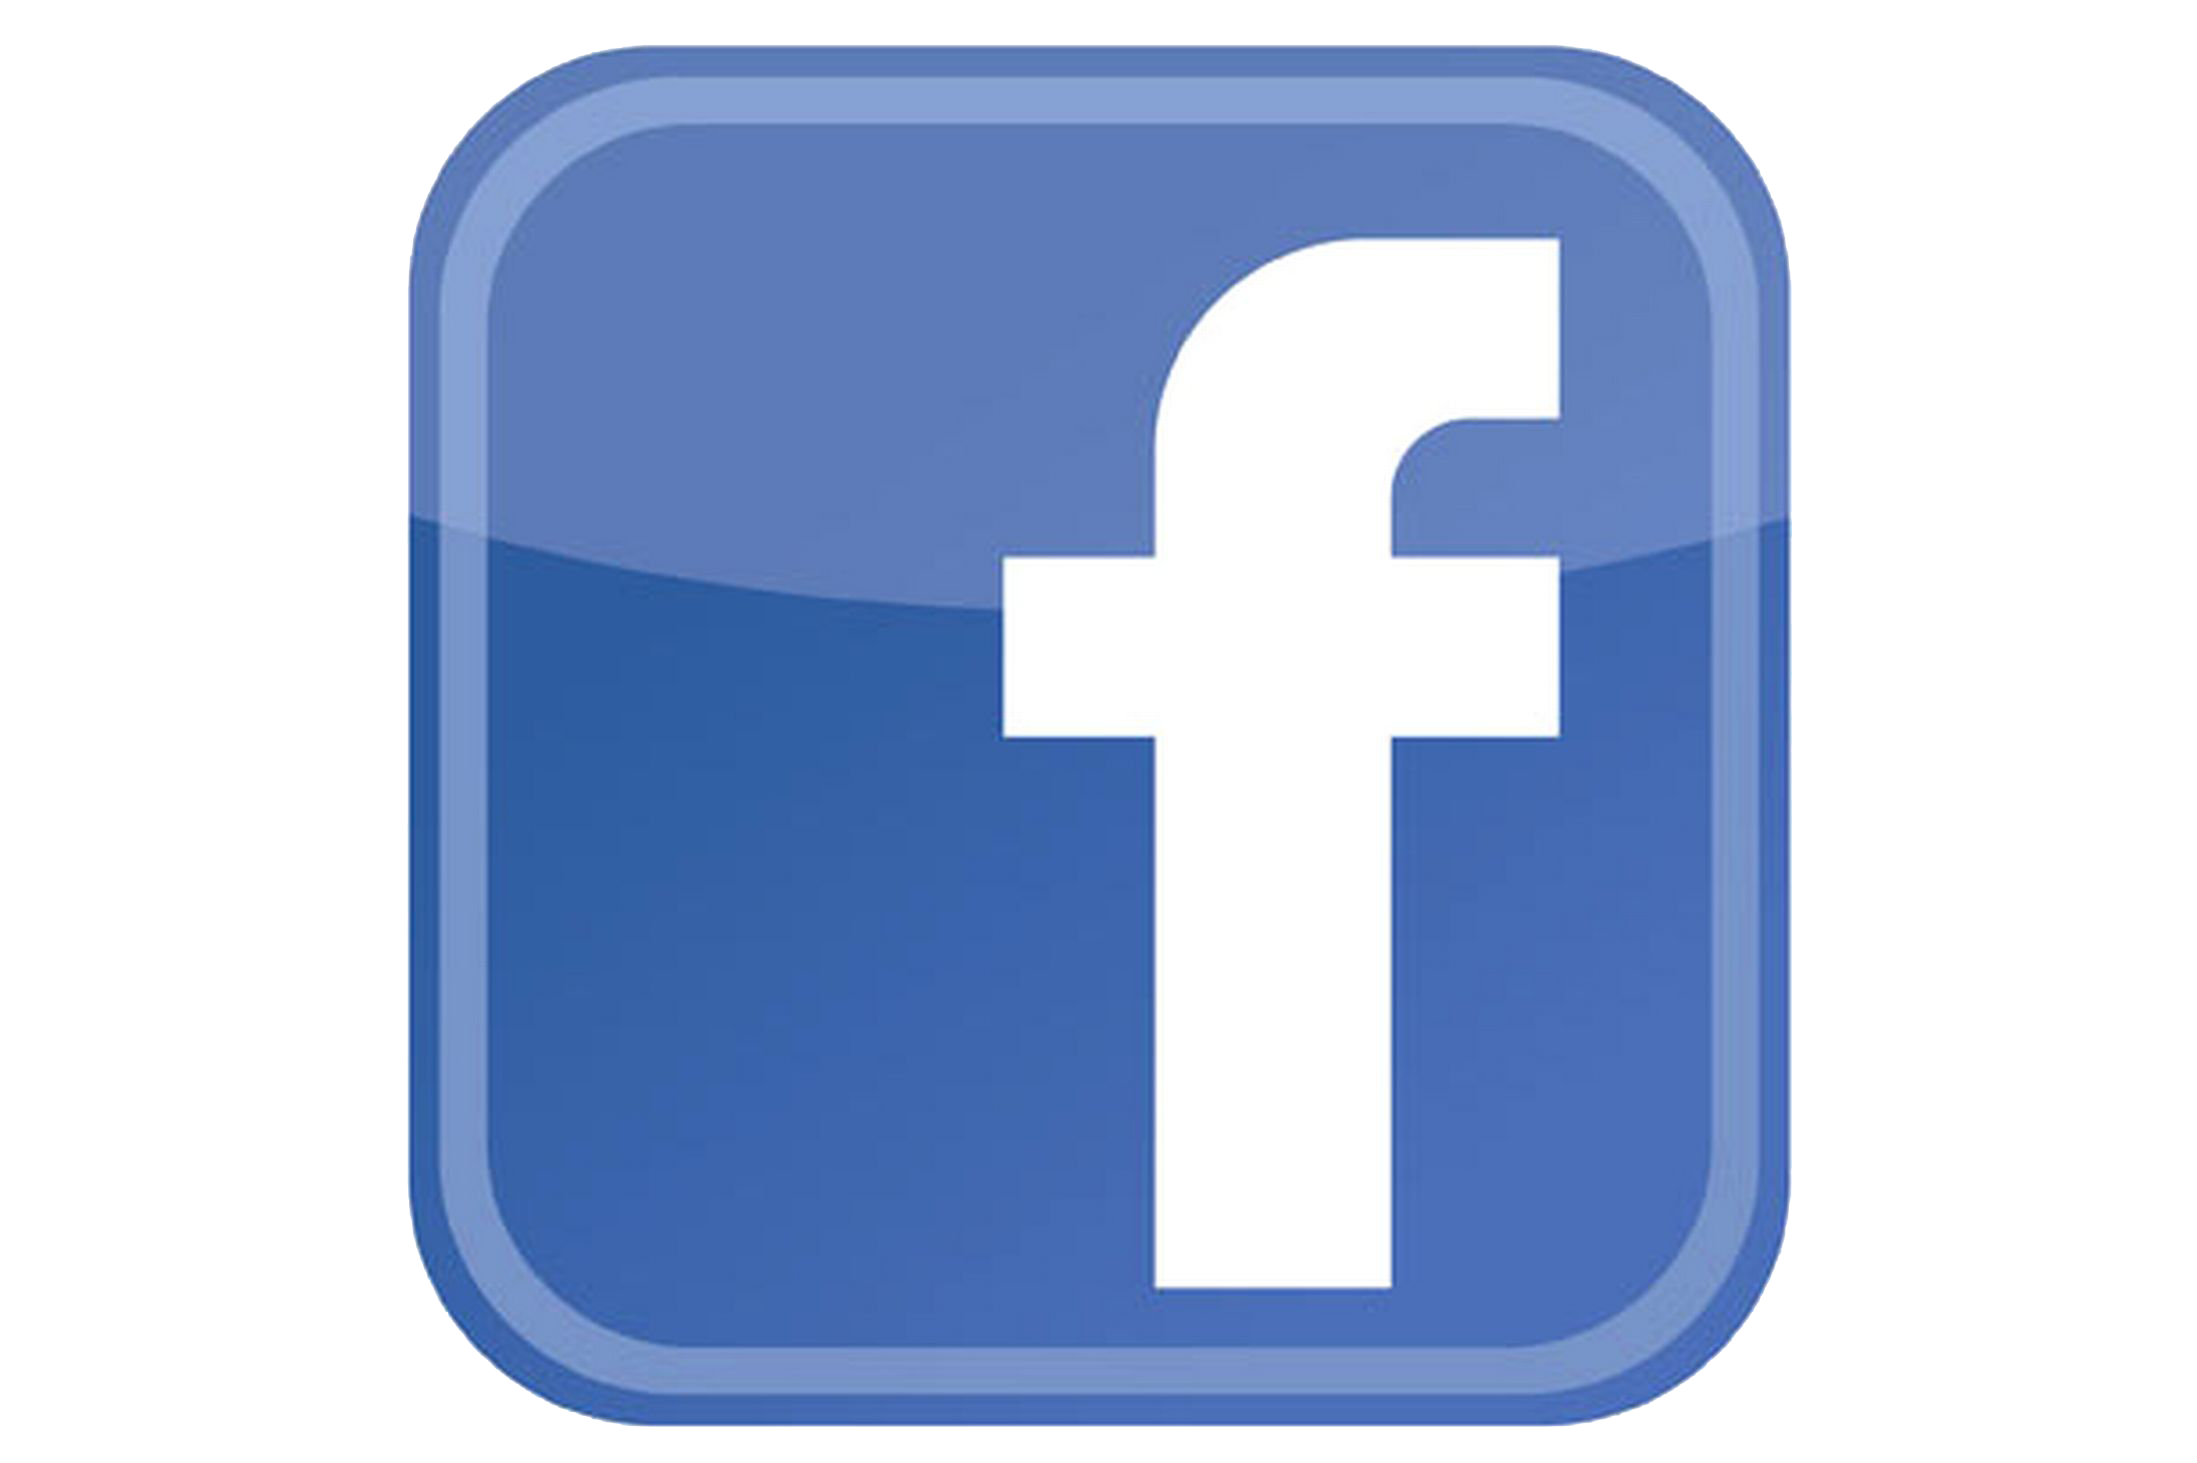 Networking Service Logo Facebook, Messenger Social Facebook PNG Image